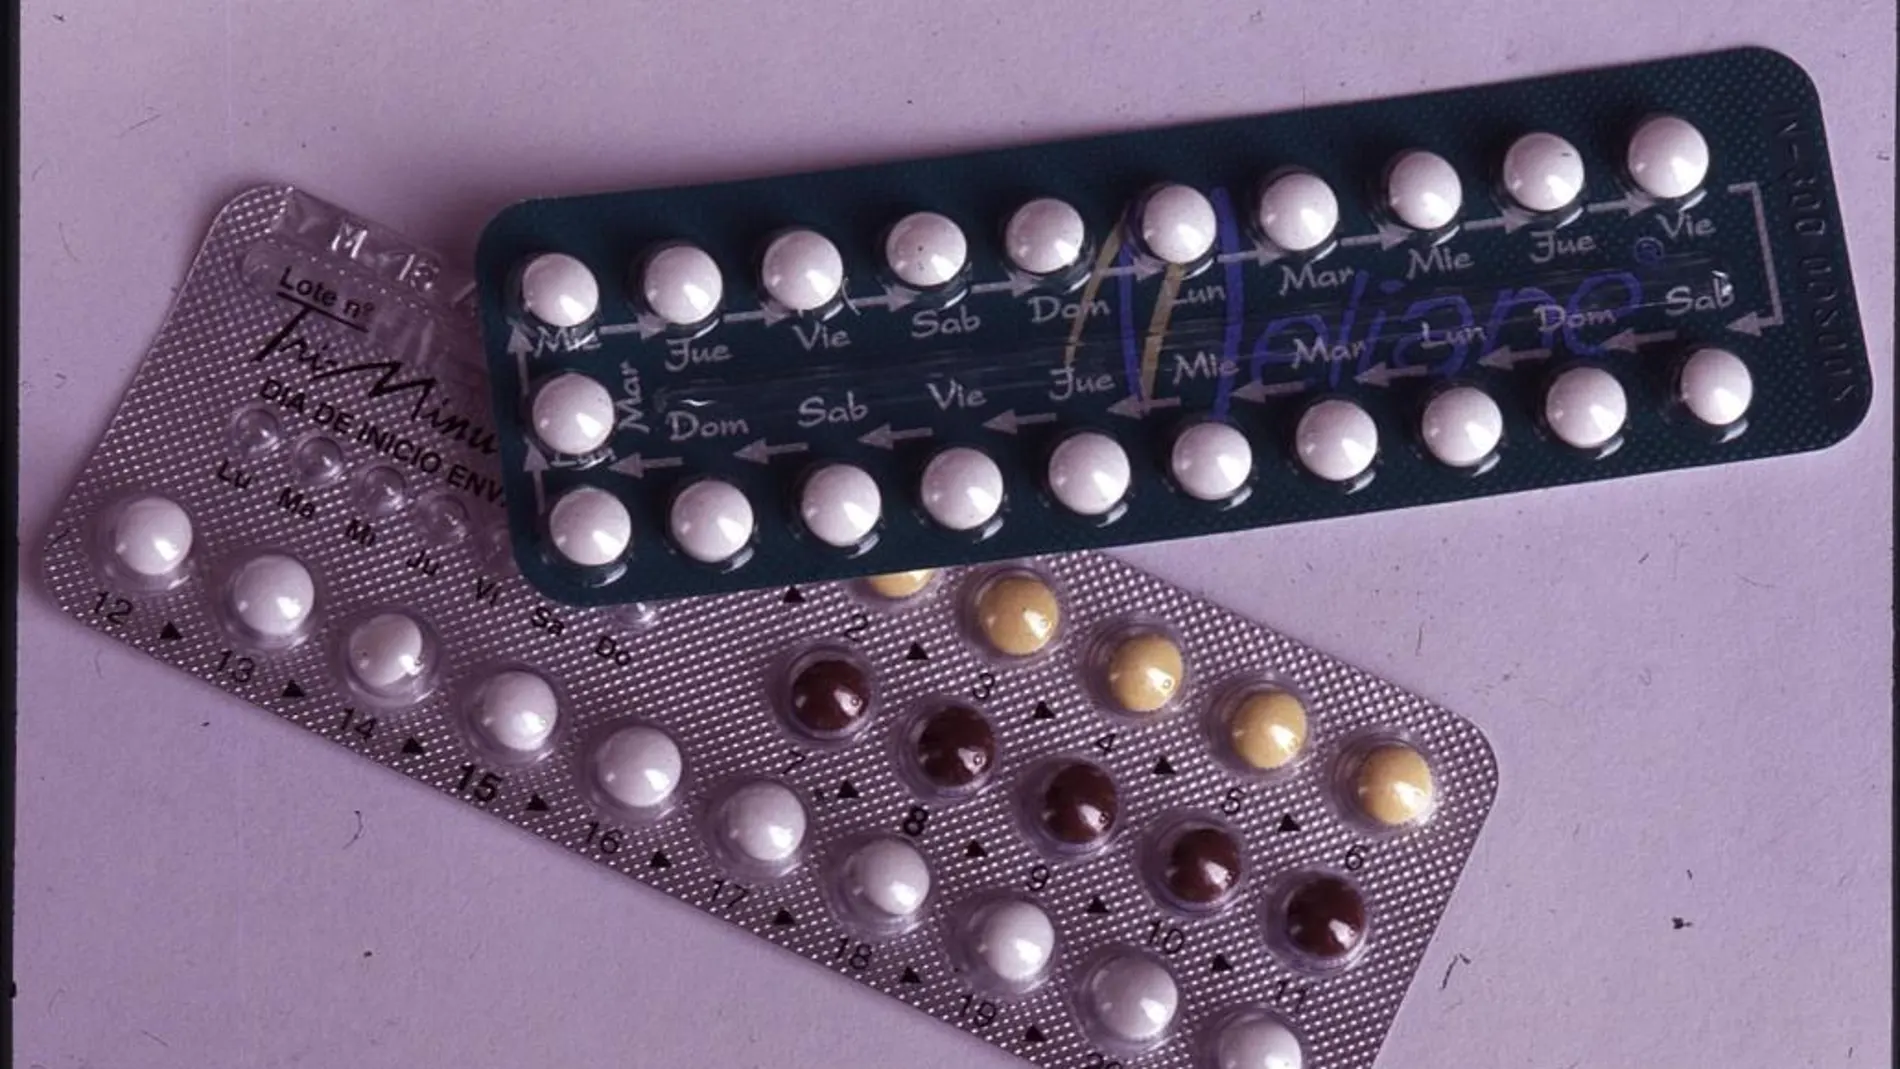 Las mujeres que toman la píldora anticonceptiva, que disminuyen y estabilizan los niveles de estrógeno, son menos propensas a sufrir graves lesiones de rodilla